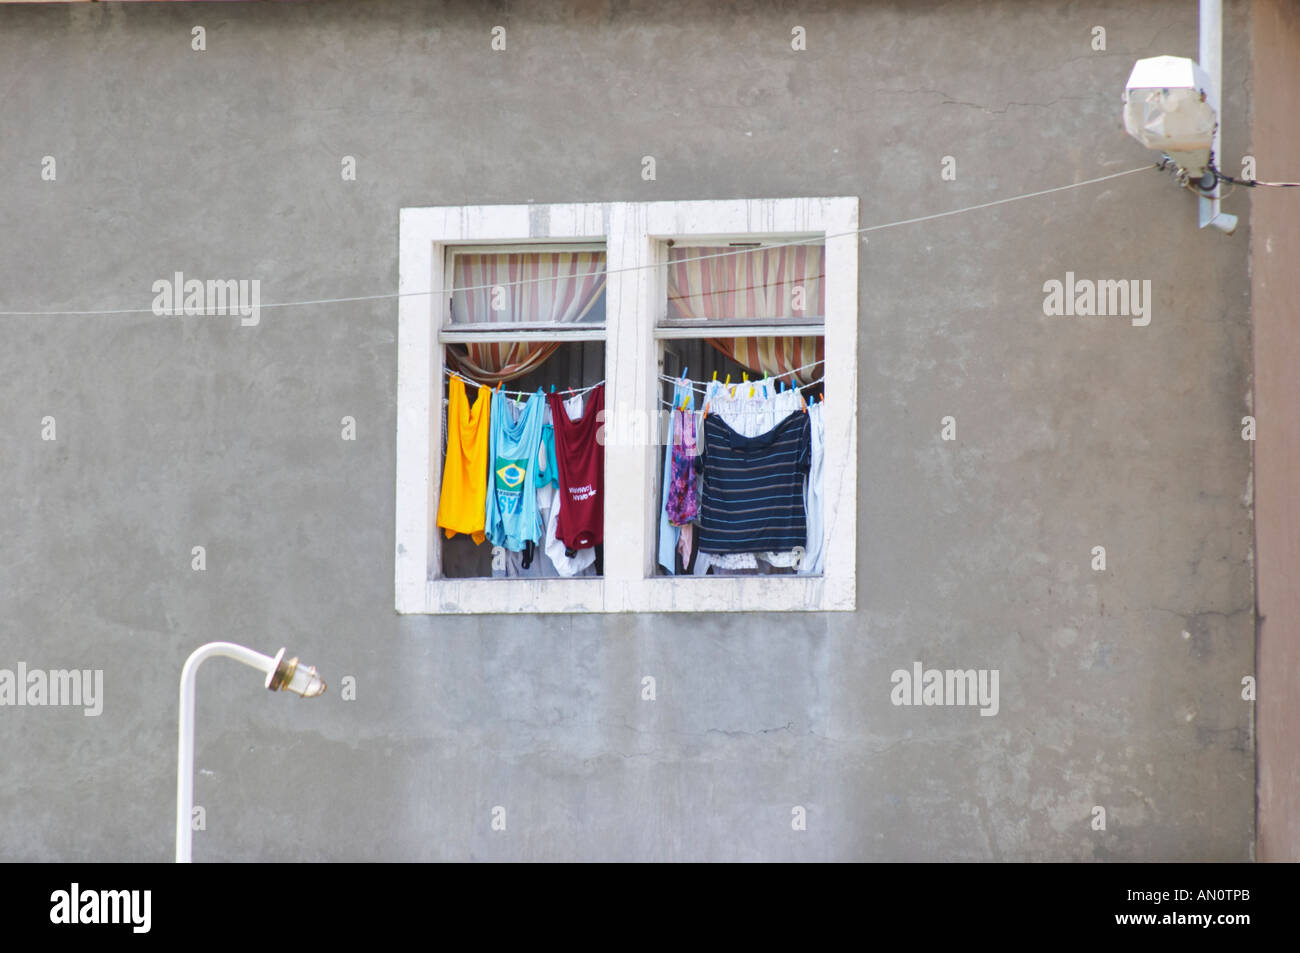 Ein Fenster mit Wäscheleinen, die Wäsche zum Trocknen aufhängen. Weiße  Fensterrahmen, graue Wand, bunte Kleidung. In Kamenari. Montenegro, Balkan,  Europa Stockfotografie - Alamy